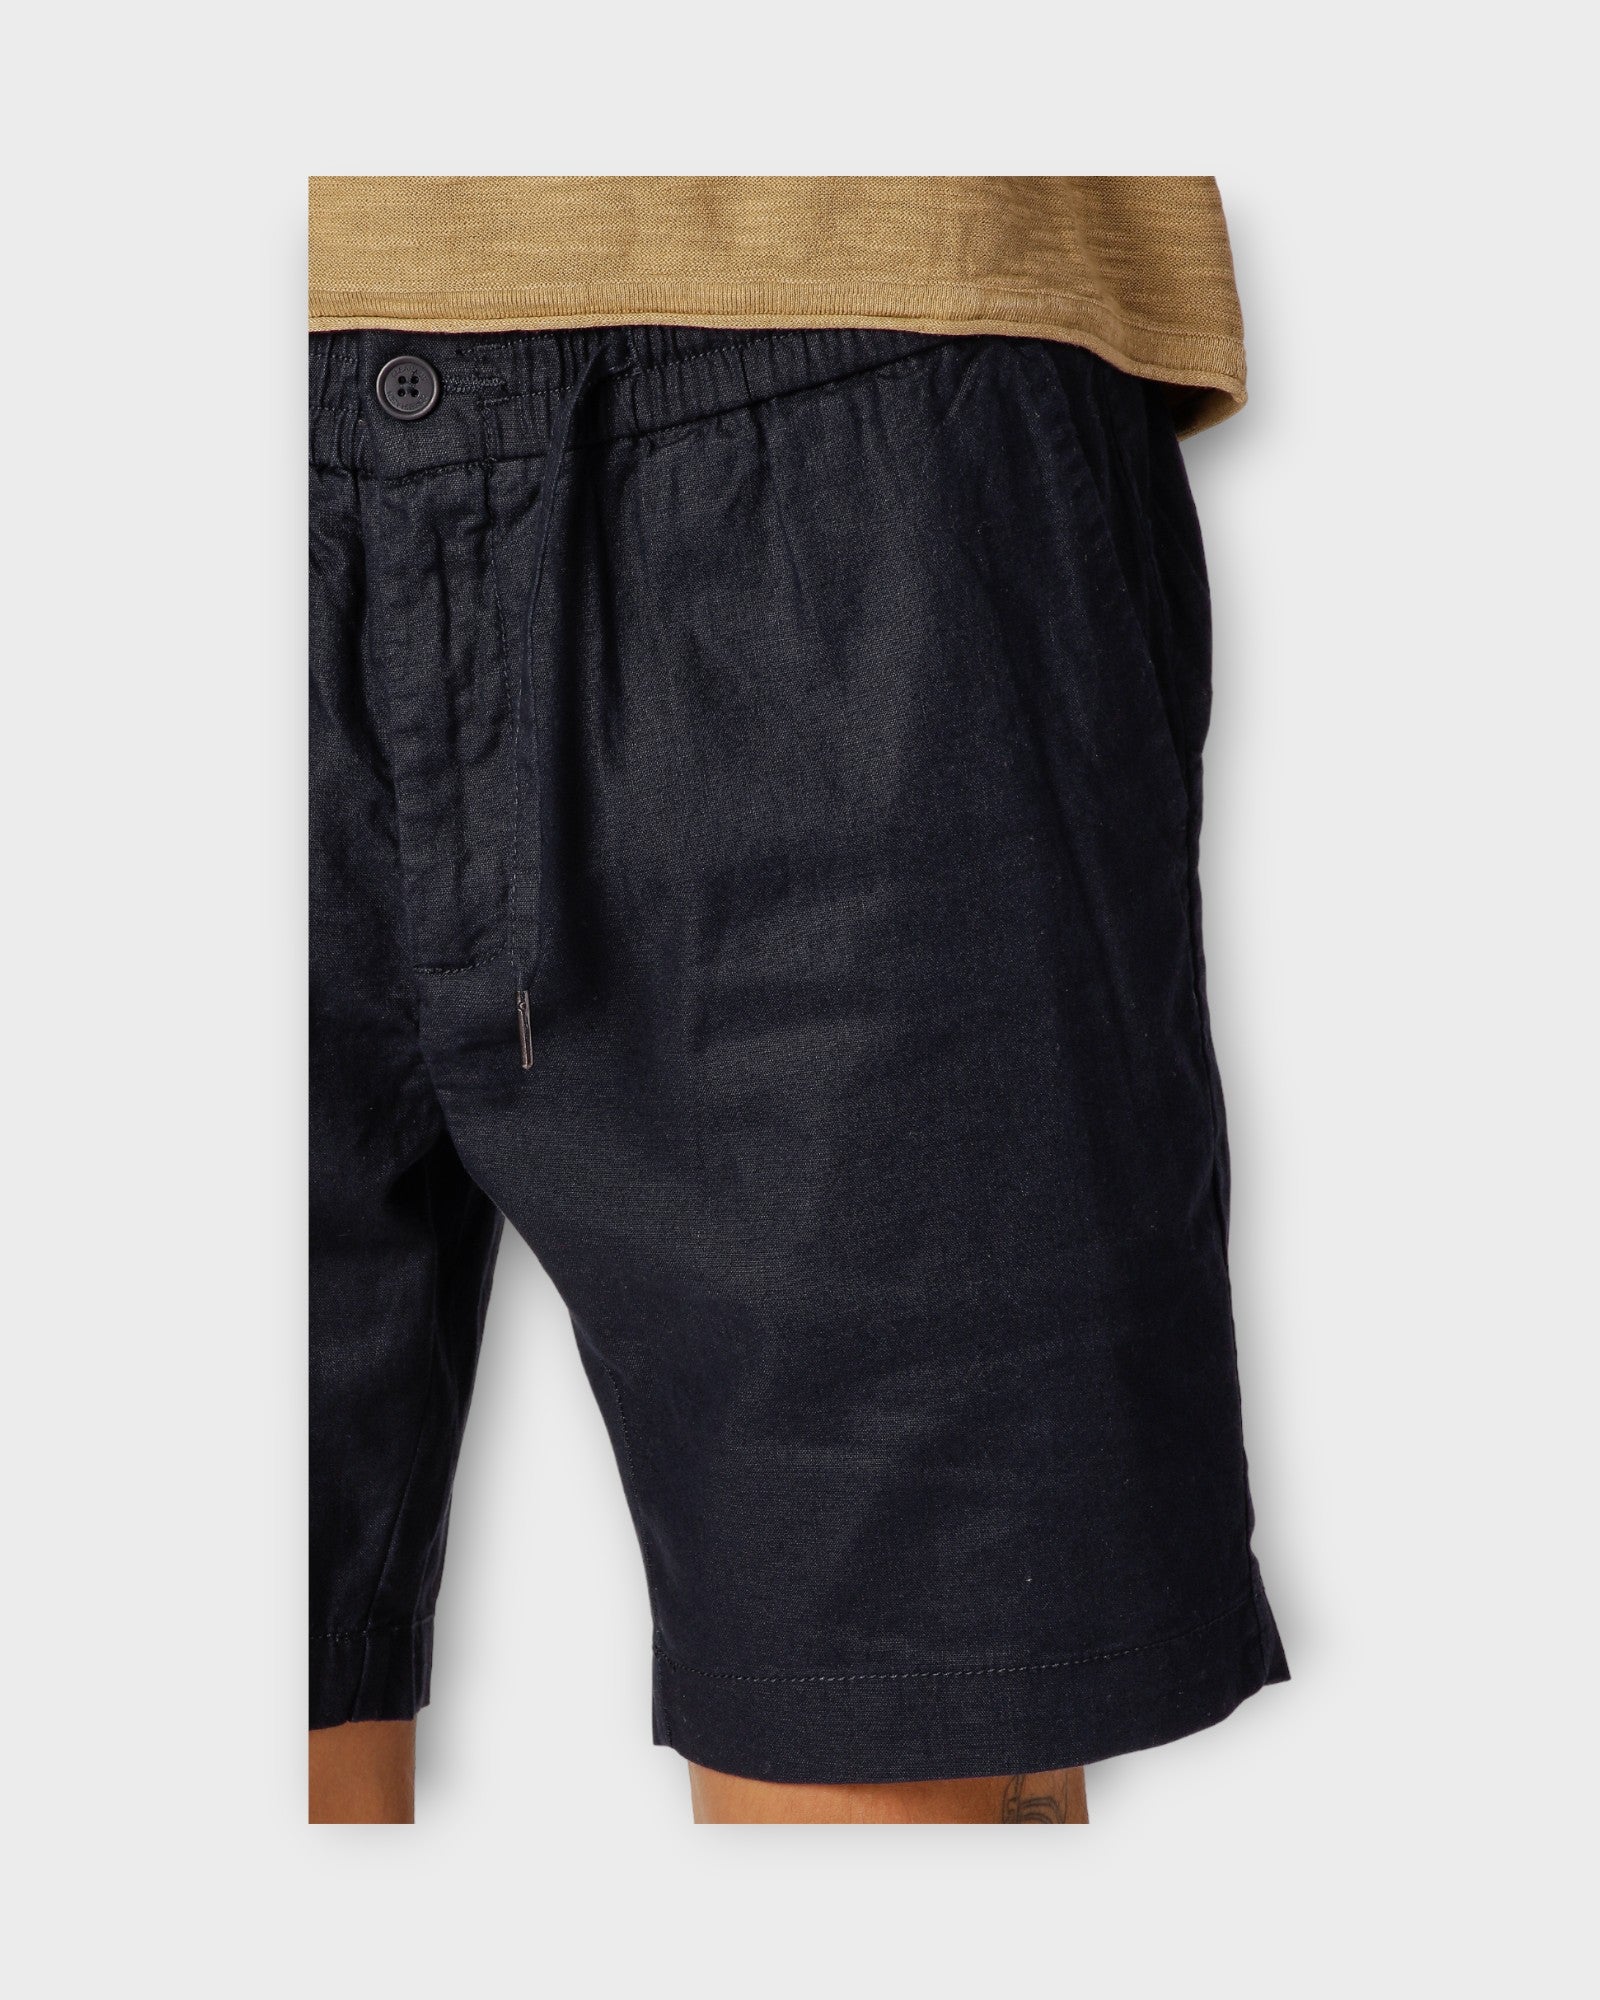 Barcelona Cotton Linen Shorts Navy fra Clean Cut Copenhagen. Mørkeblå hør shorts til mænd. Her set på model i closeup.